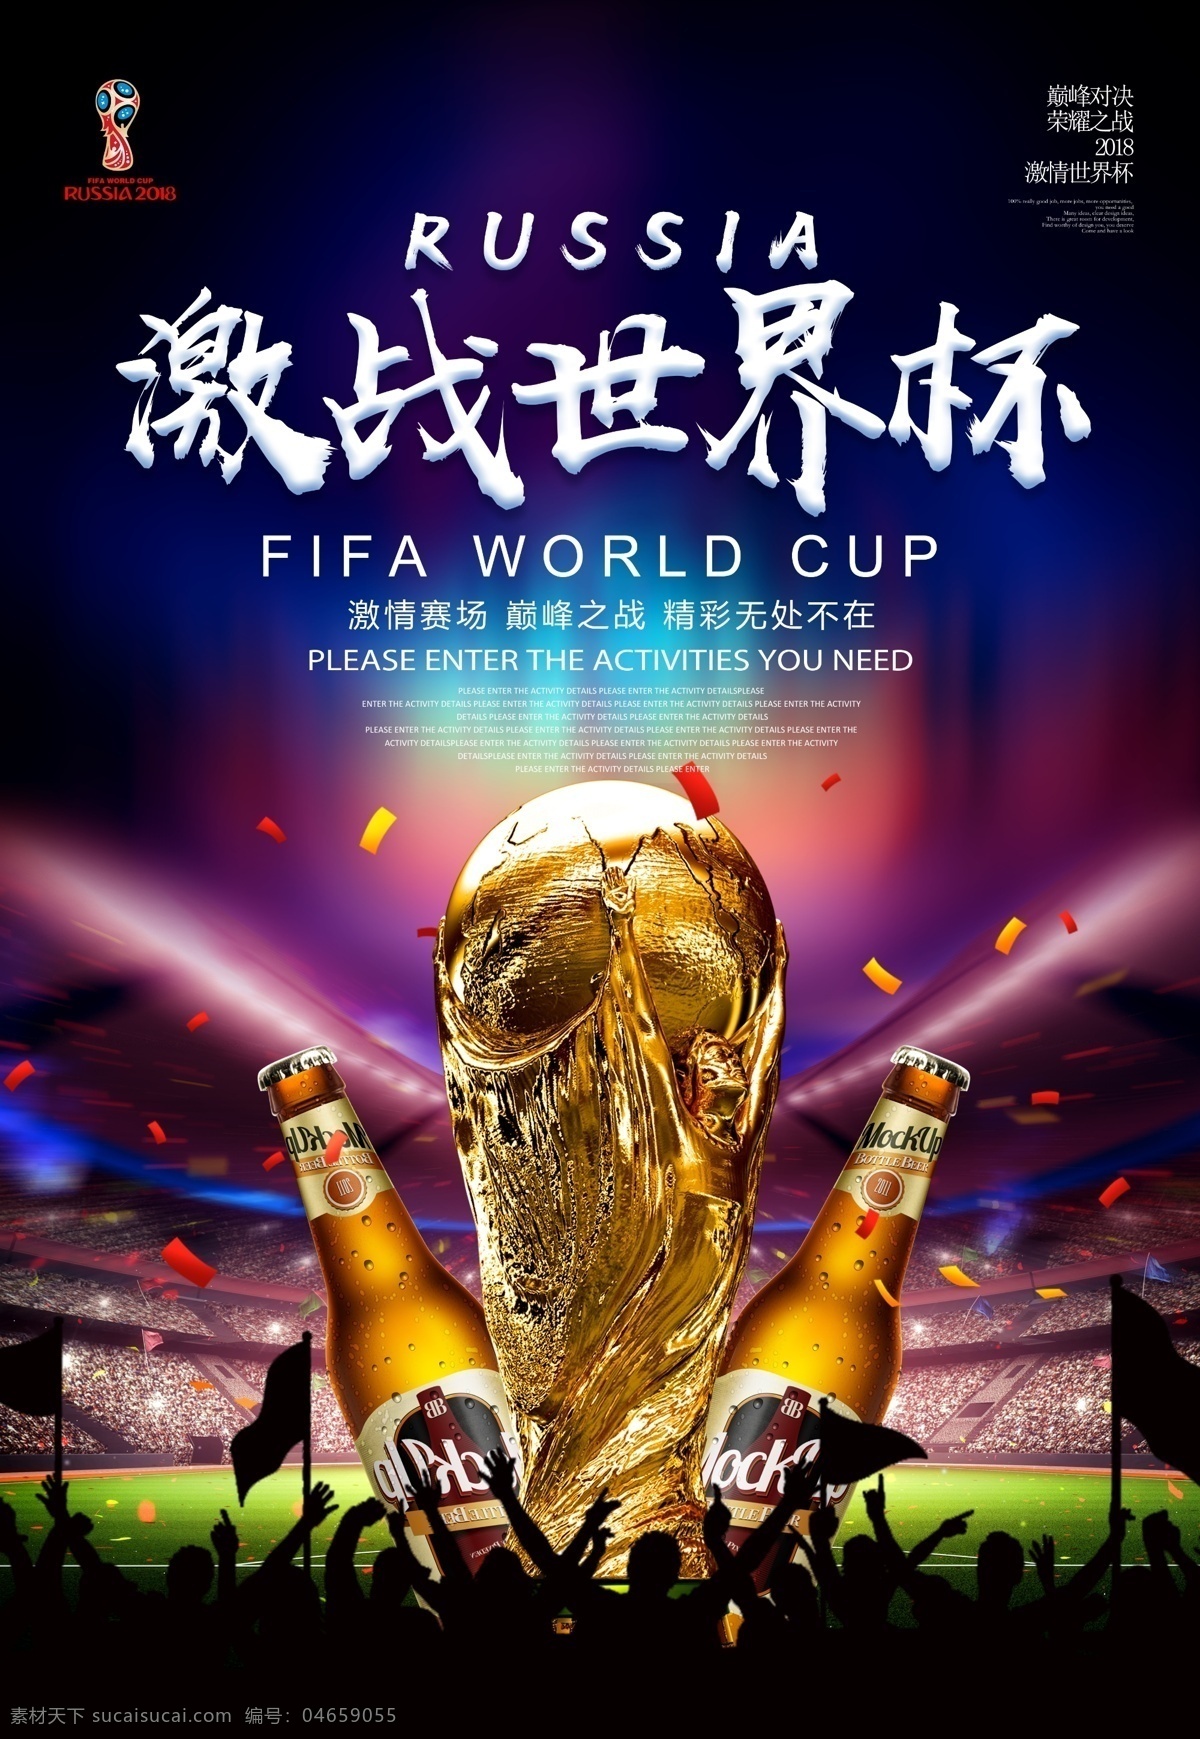 世界杯 比赛 酷 炫 海报 运动 足球 体育 世界杯素材 商城促销 世界杯活动 足球夜